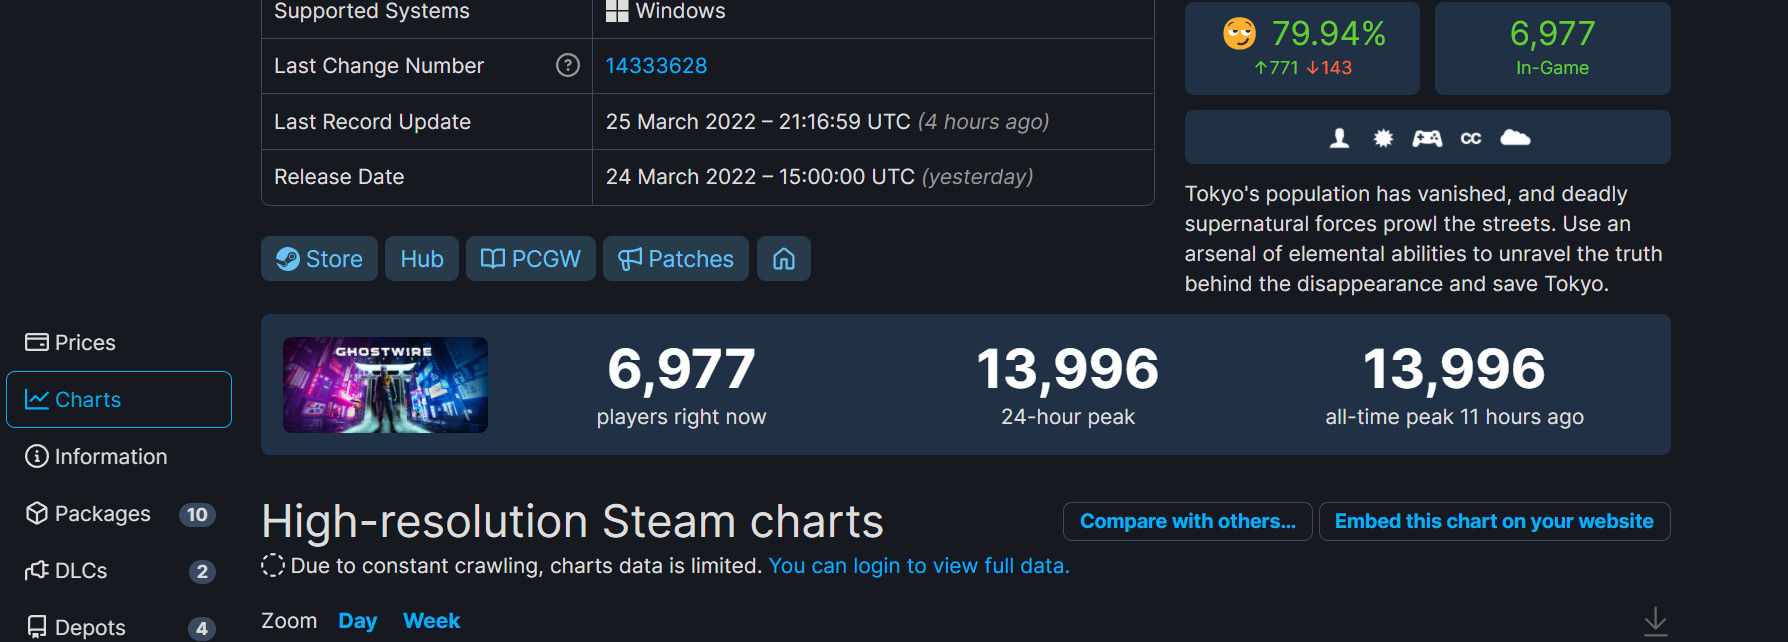 超《邪靈入侵2》！《幽靈線：東京》Steam峰值近1.4萬